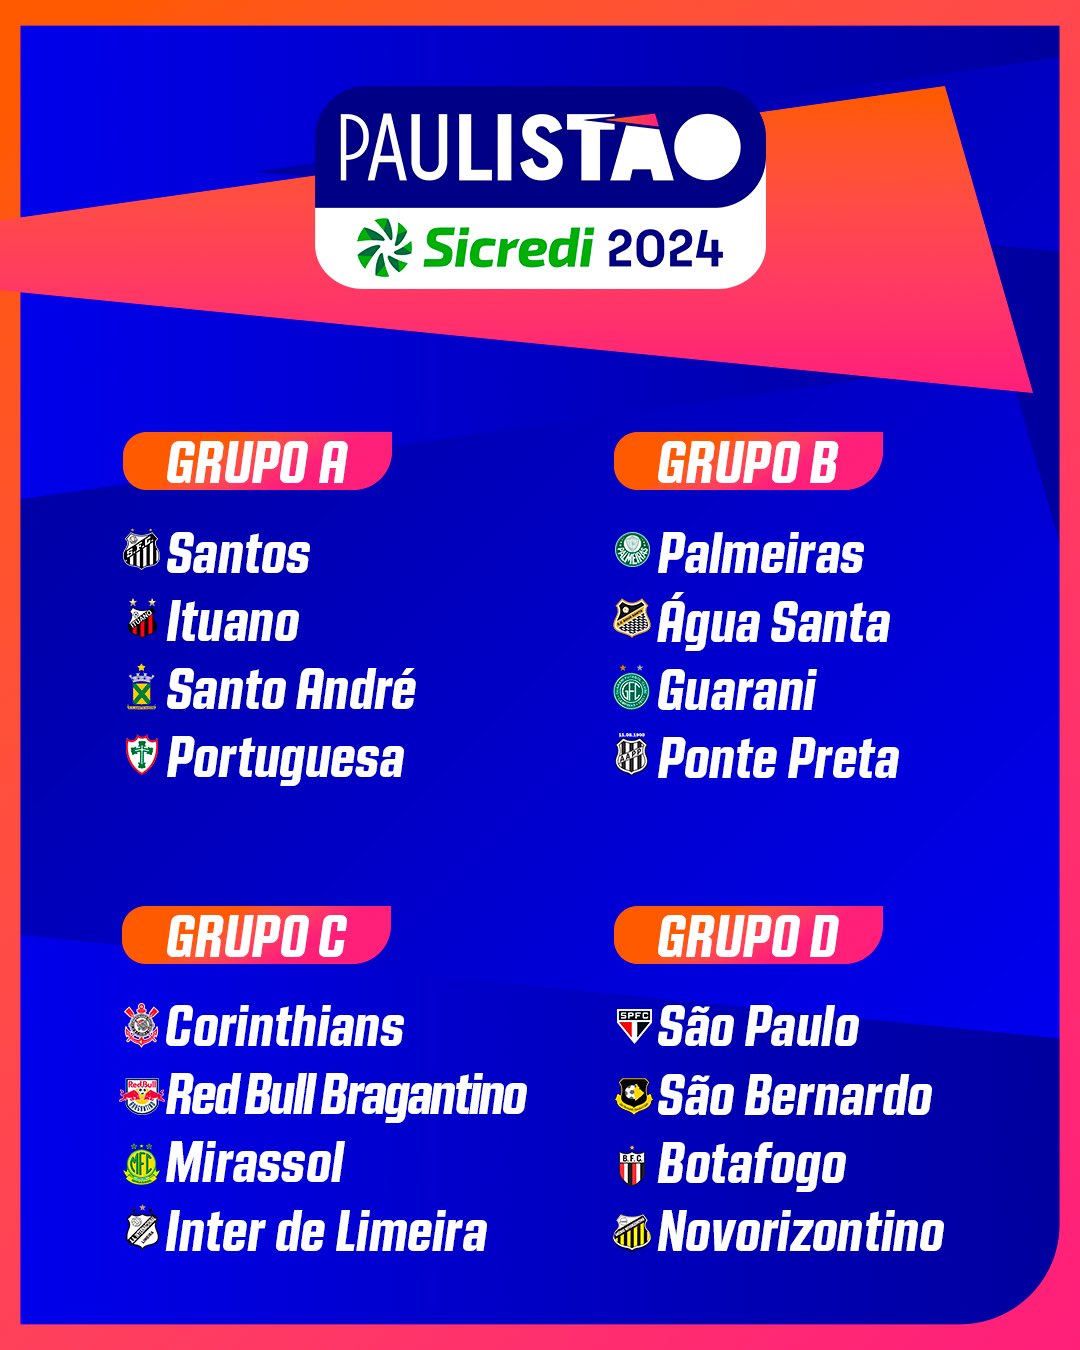 Paulistão on X: A TABELA DO PAULISTÃO SICREDI 2022! Confira